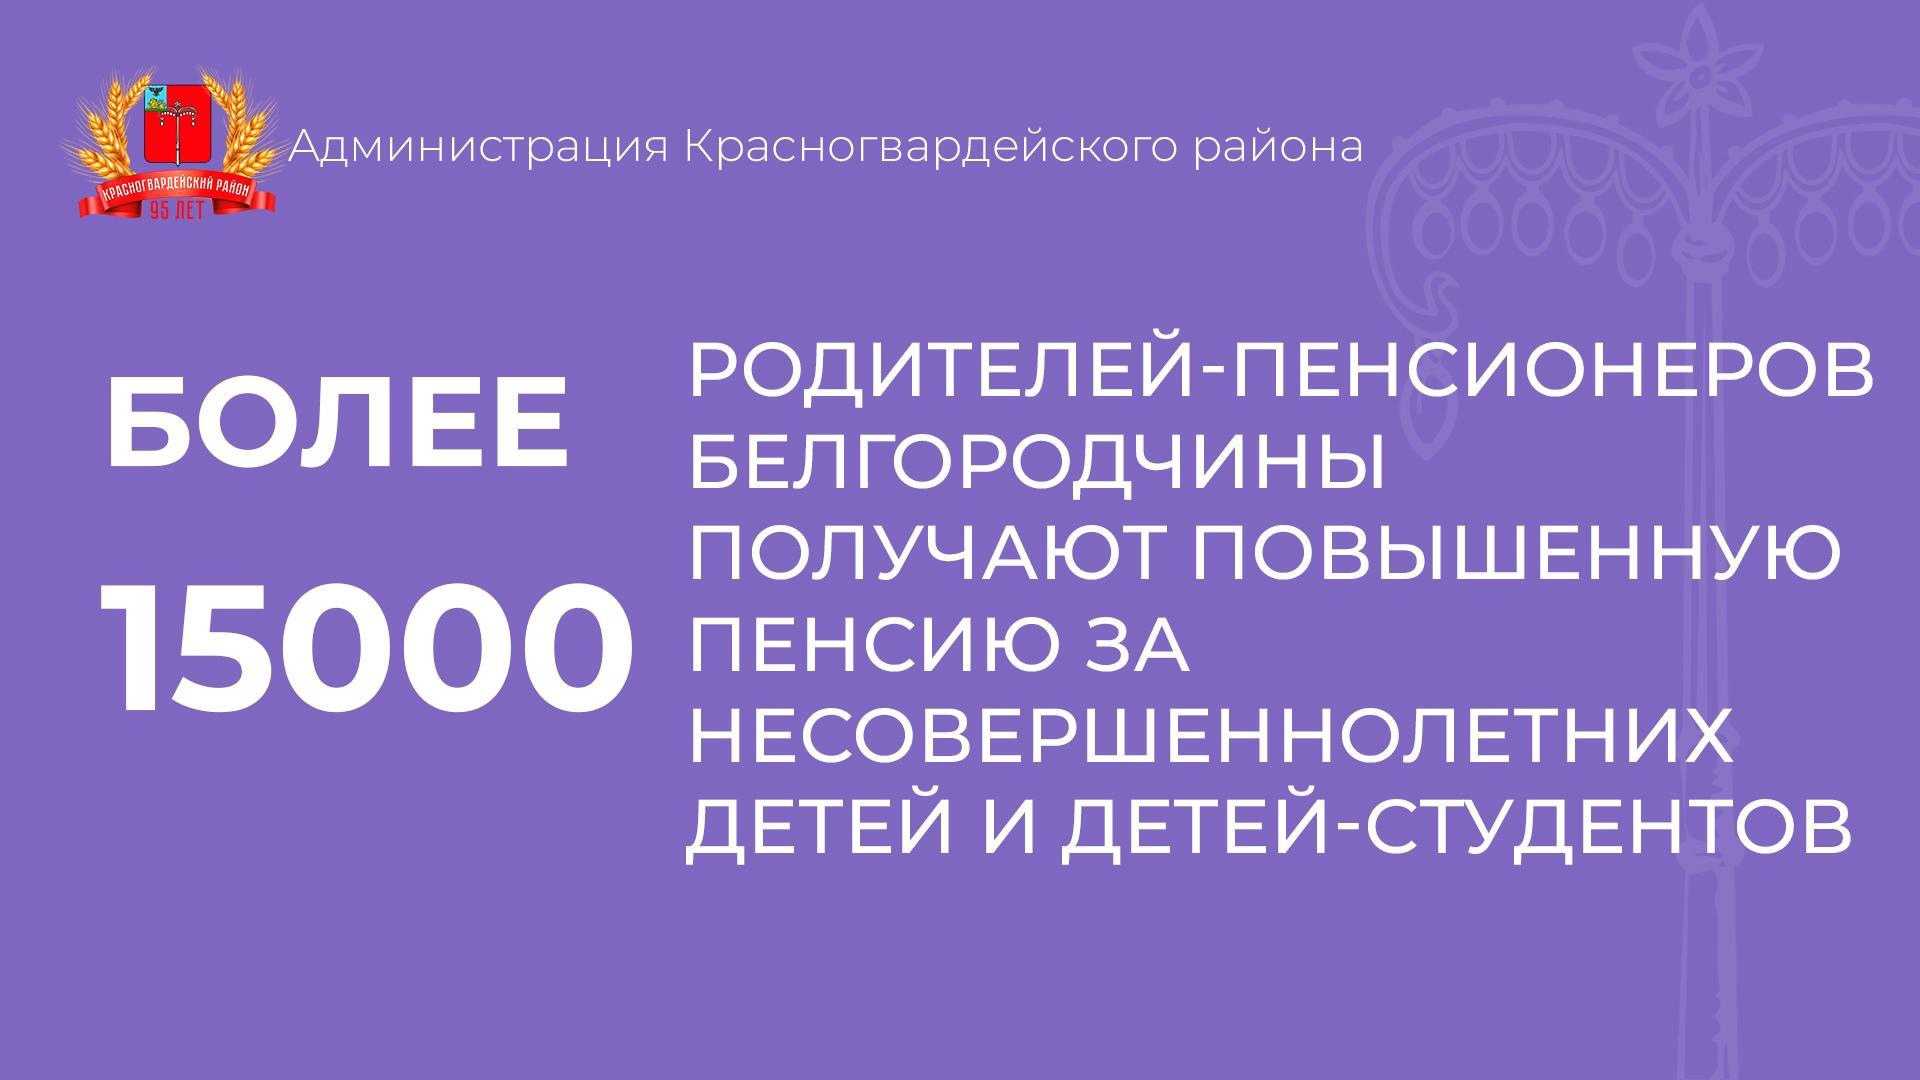 Более 15 тысяч родителей-пенсионеров Белгородчины получают повышенную пенсию за несовершеннолетних детей и детей-студентов.